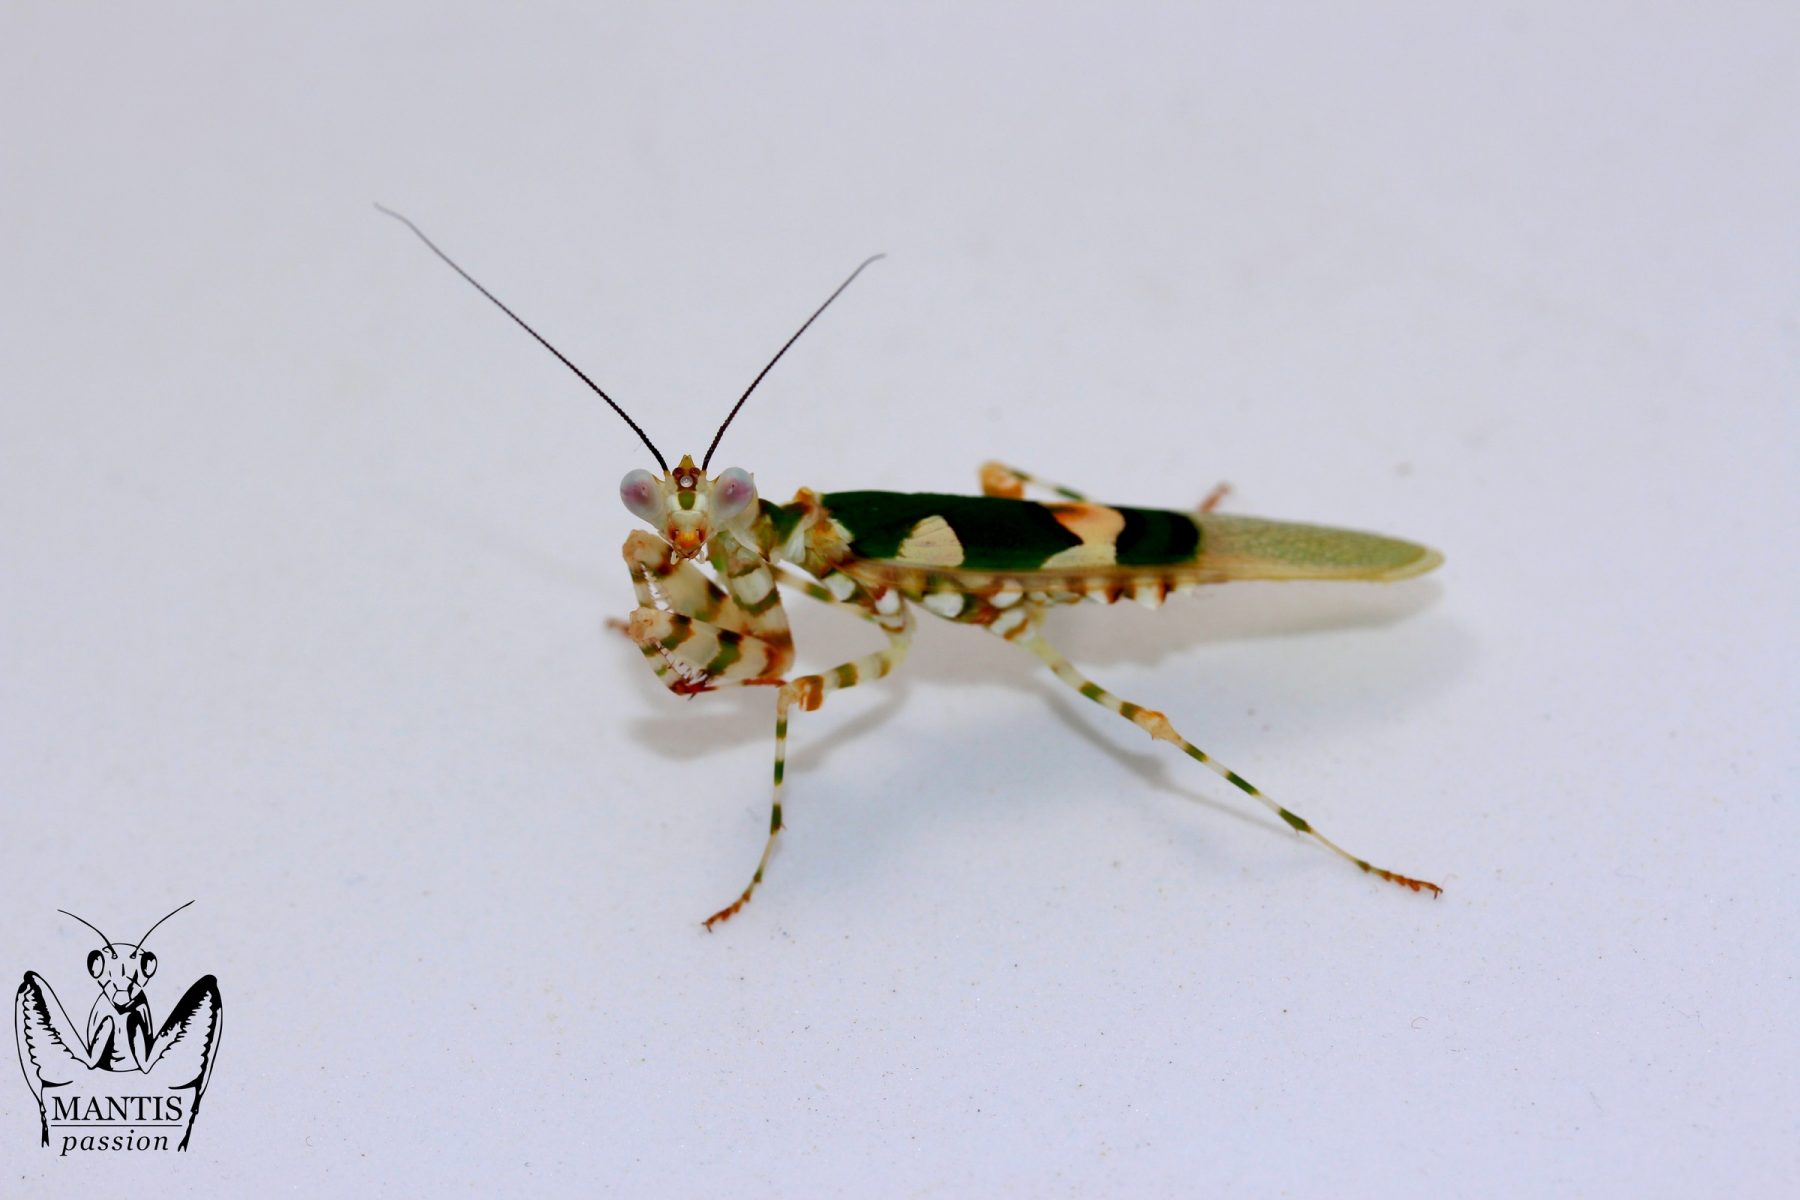 Chlidonoptera lestoni mâle adulte